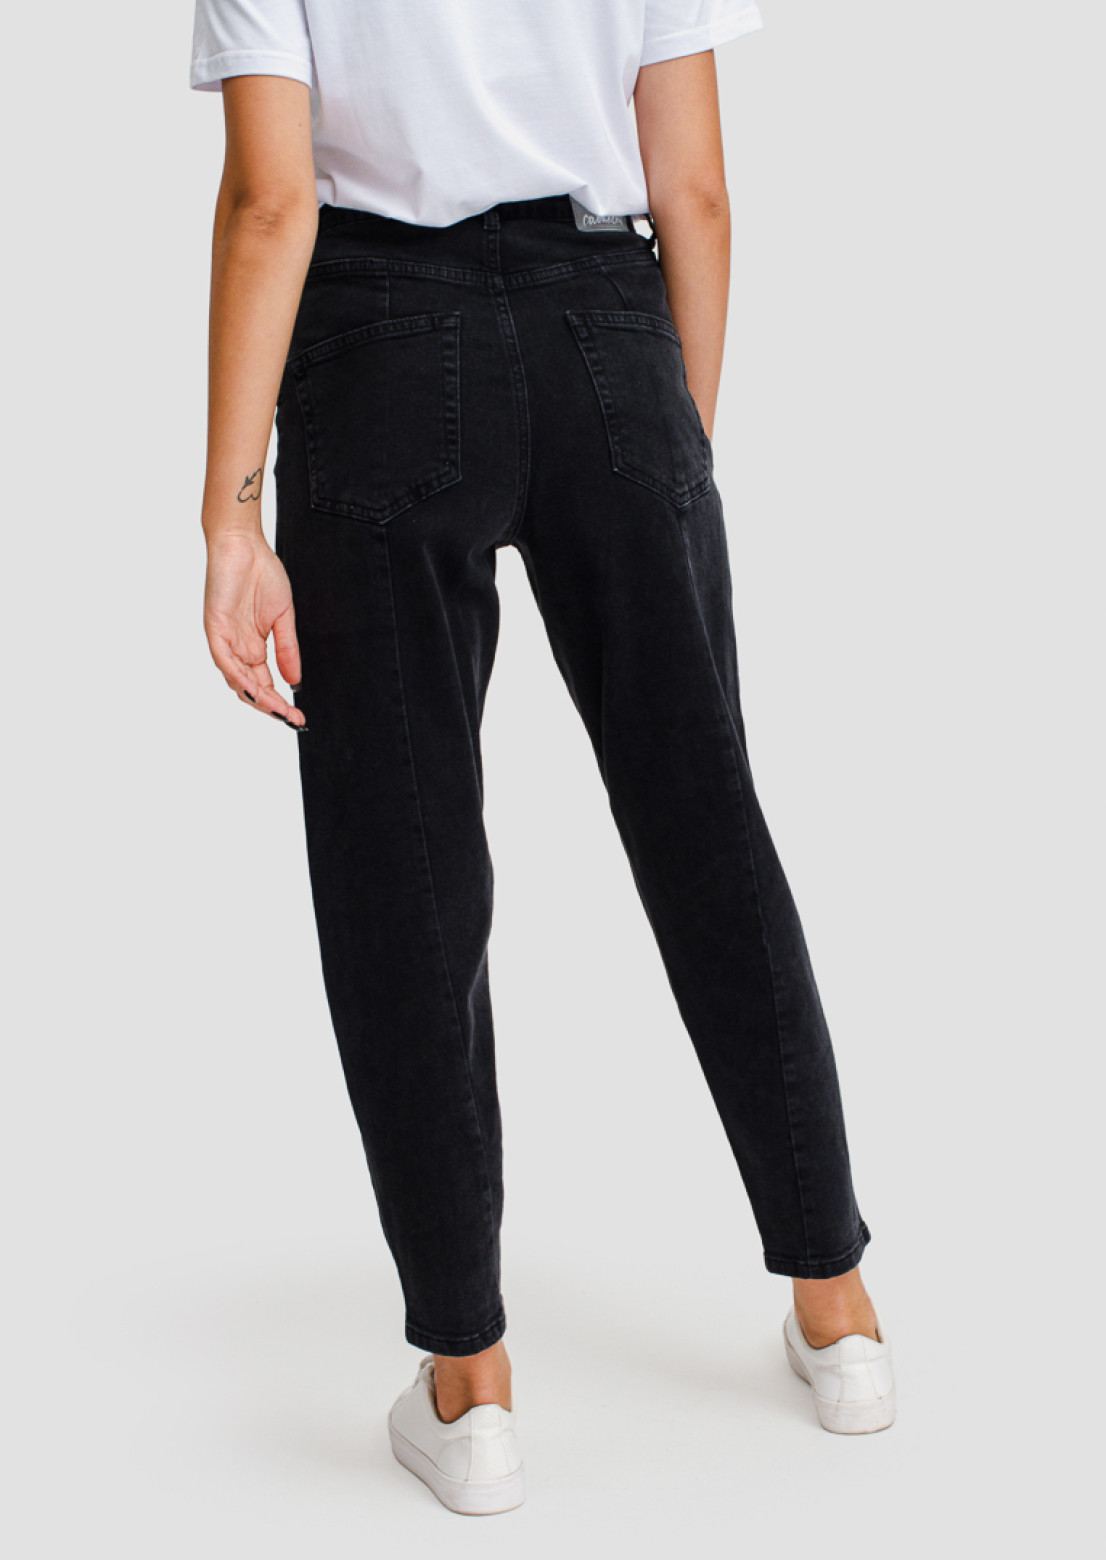 Dark grey high-waisted jeans with arrow